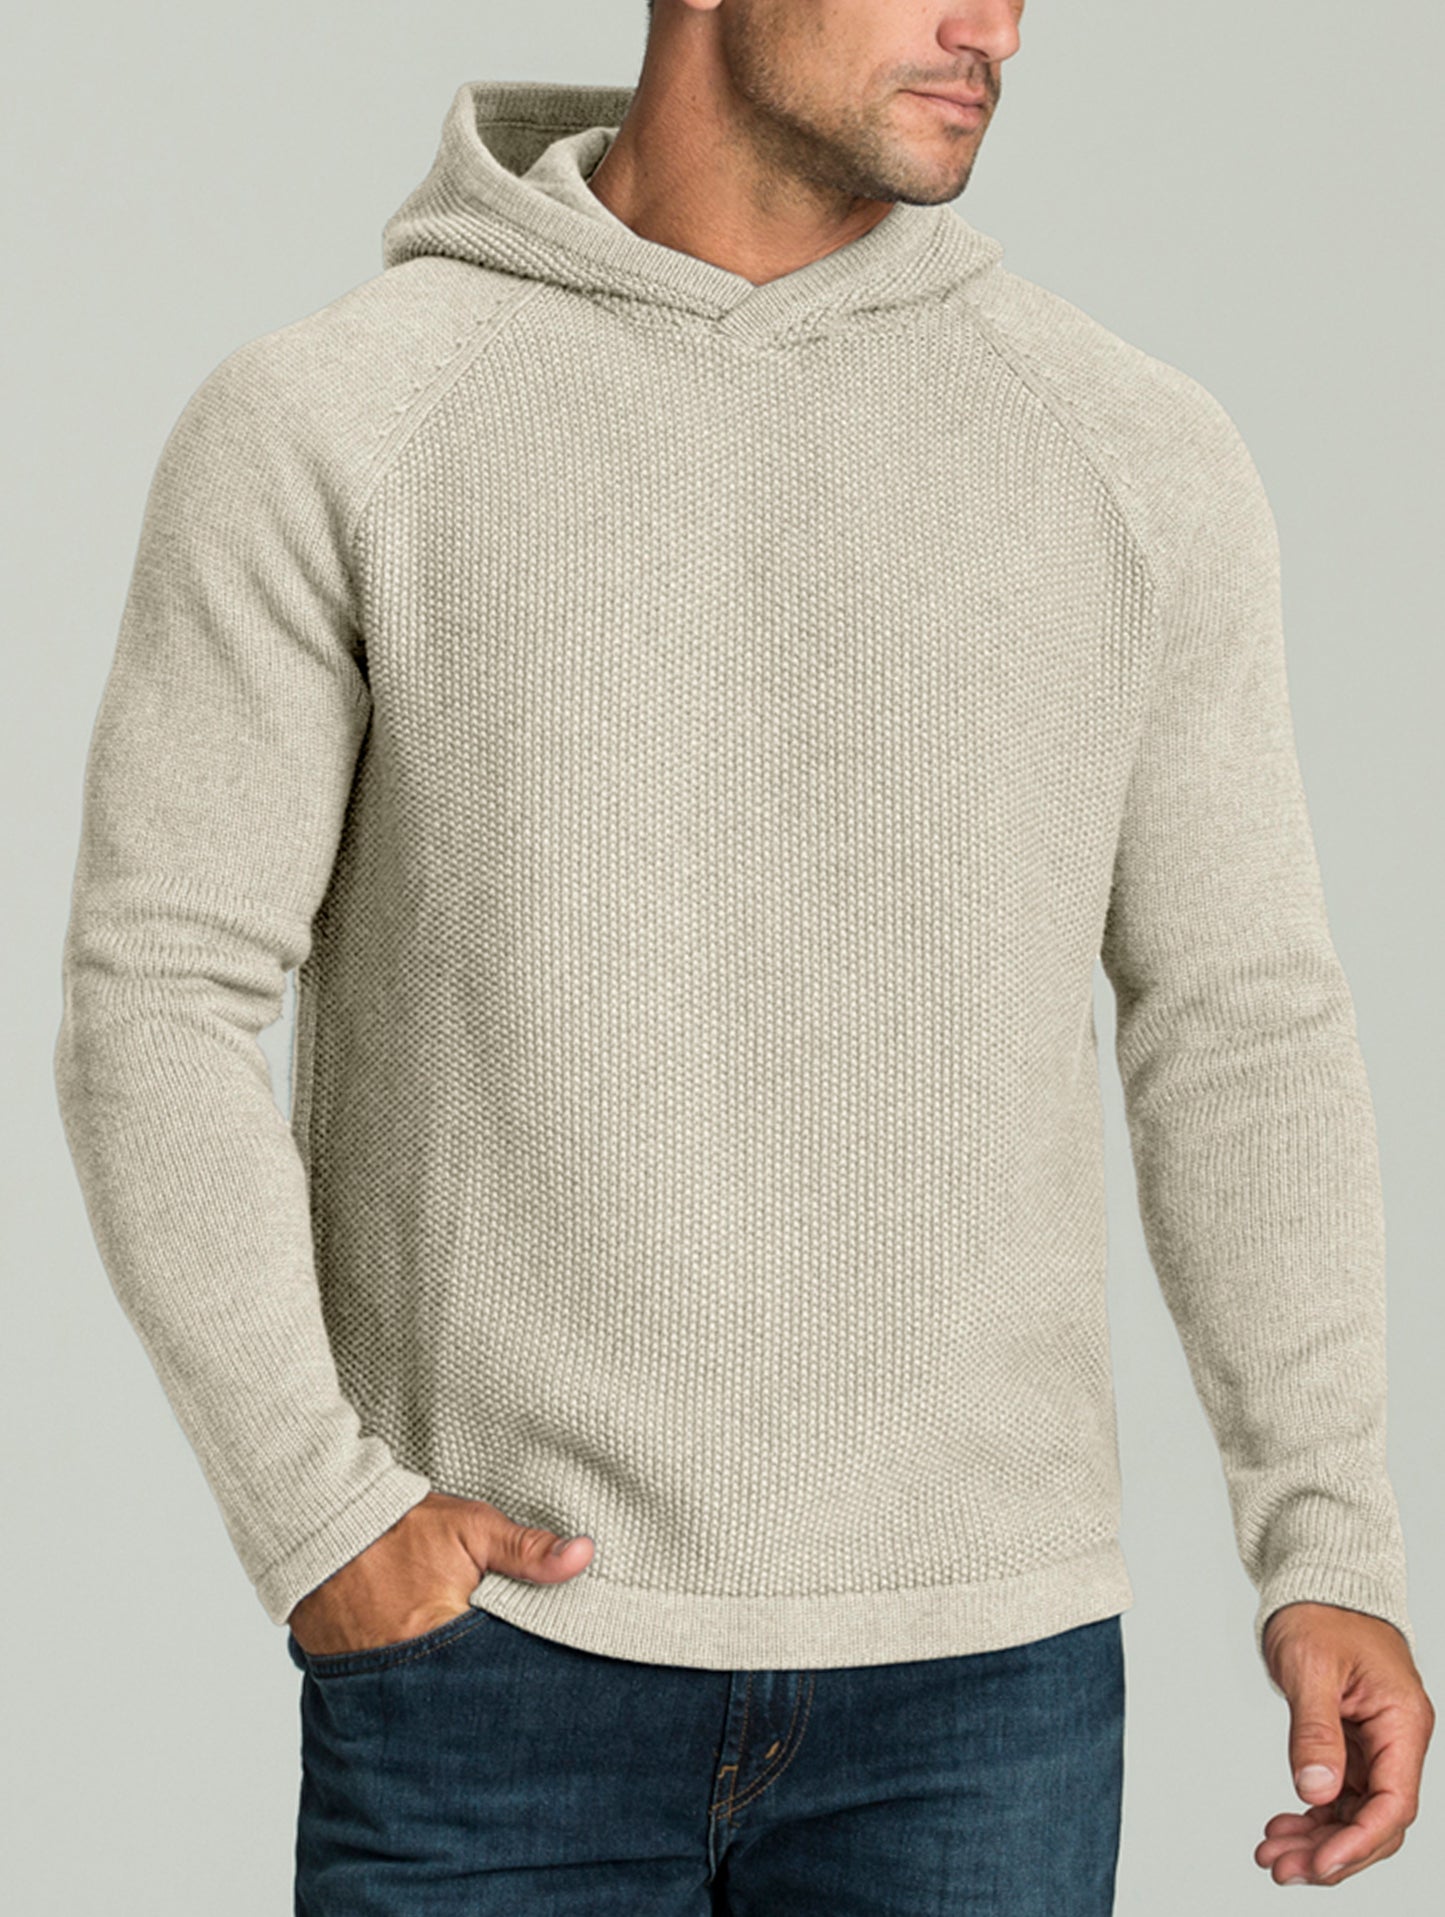 man wearing beige hooded sweater